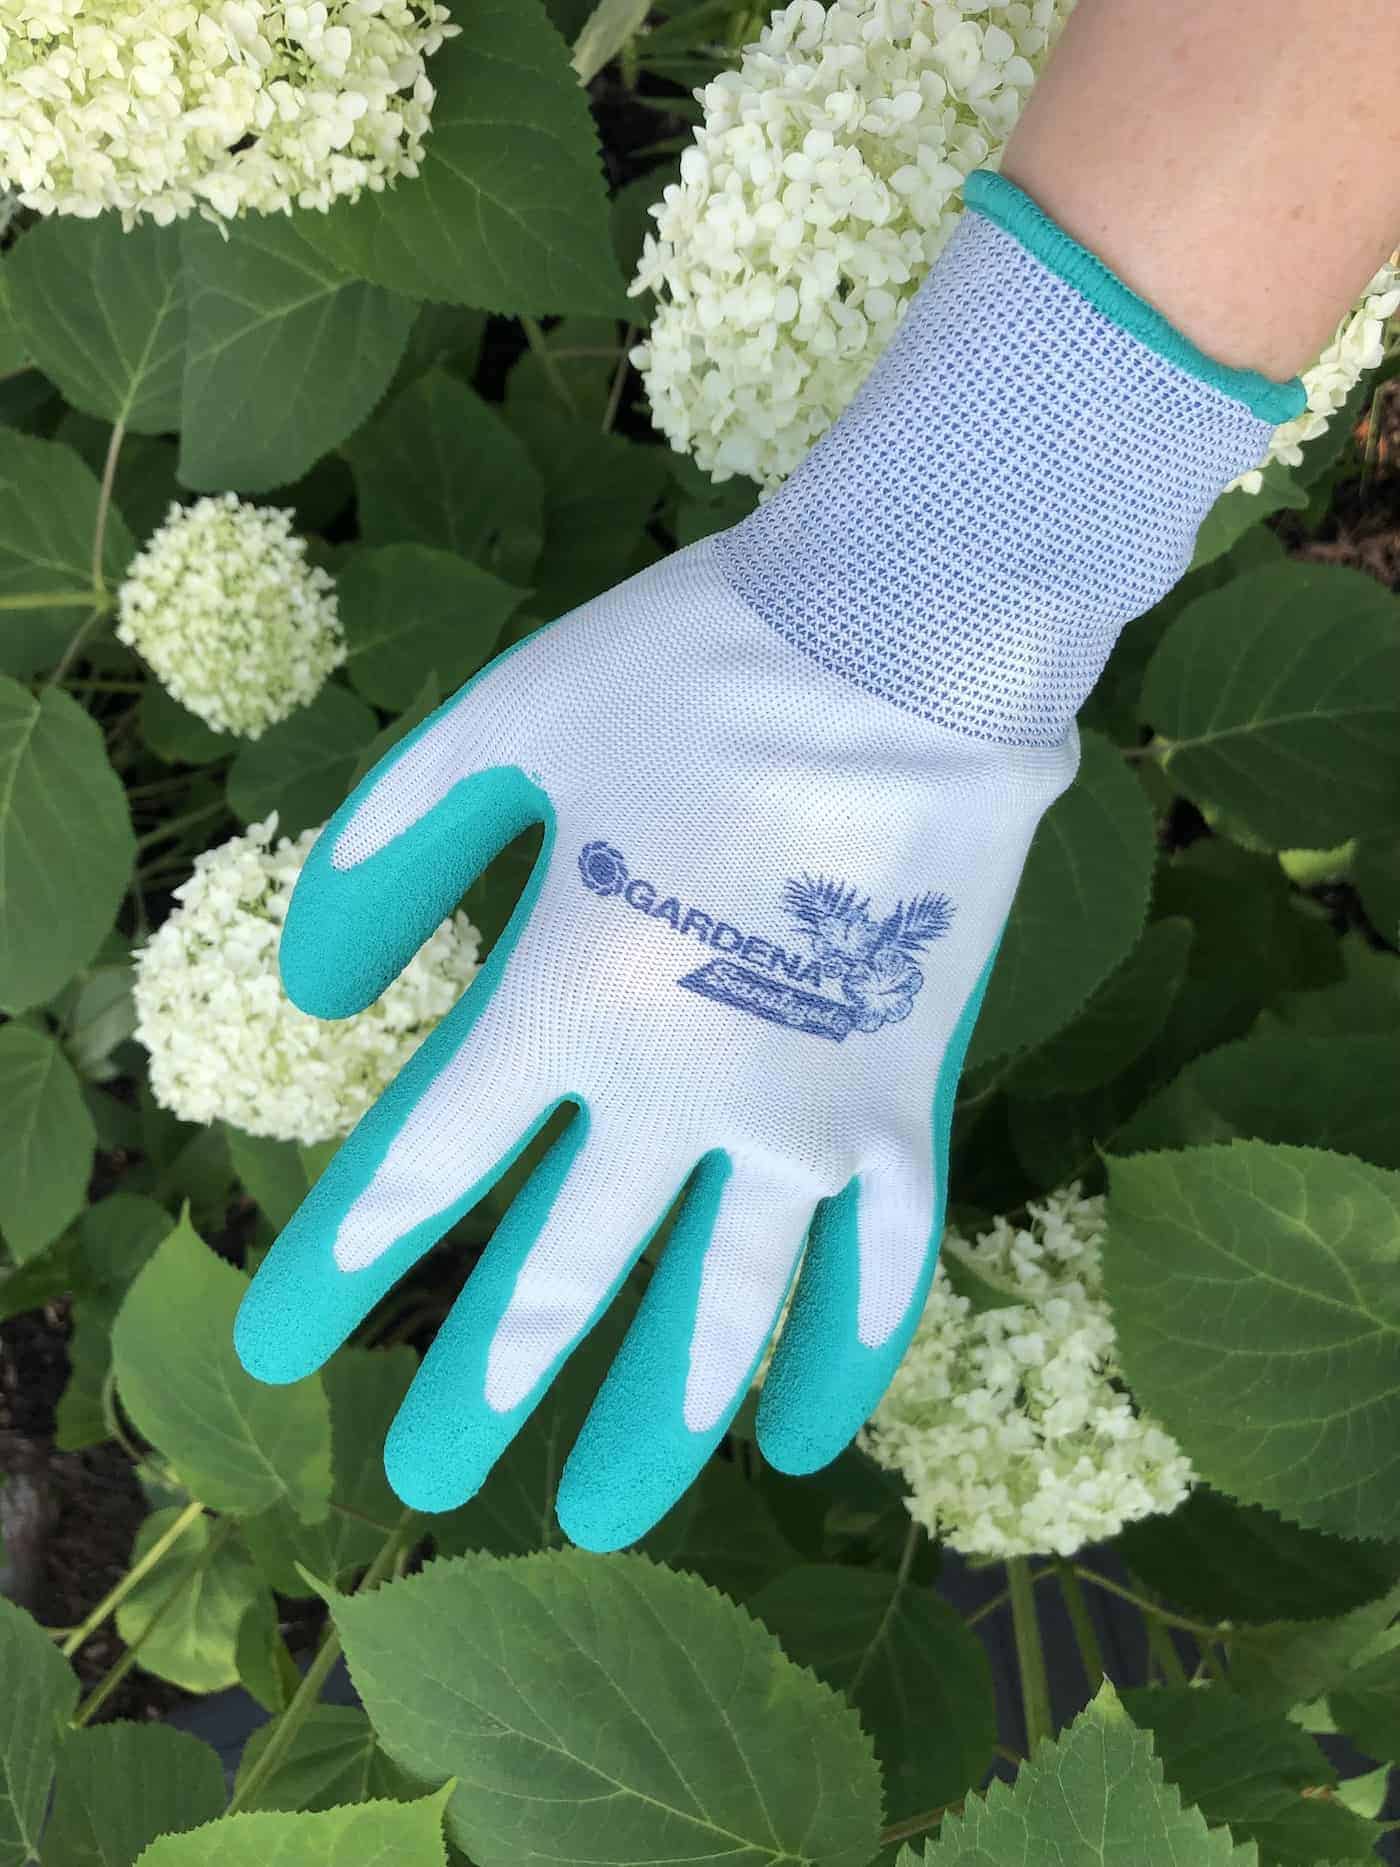 Gardena gardening gloves